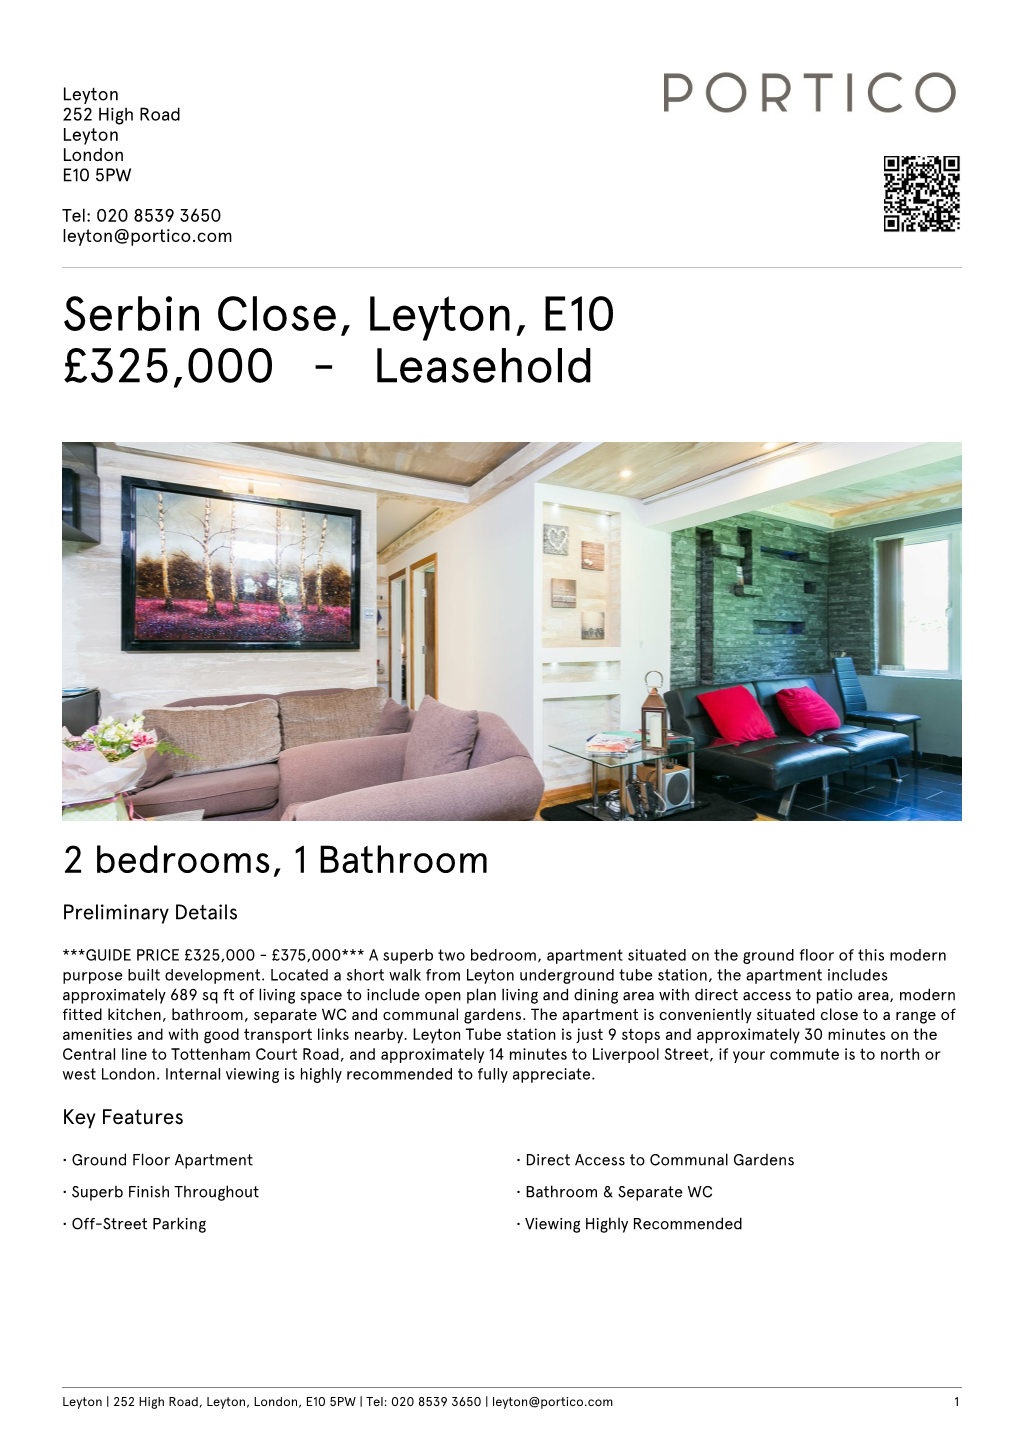 Serbin Close, Leyton, E10 £325000